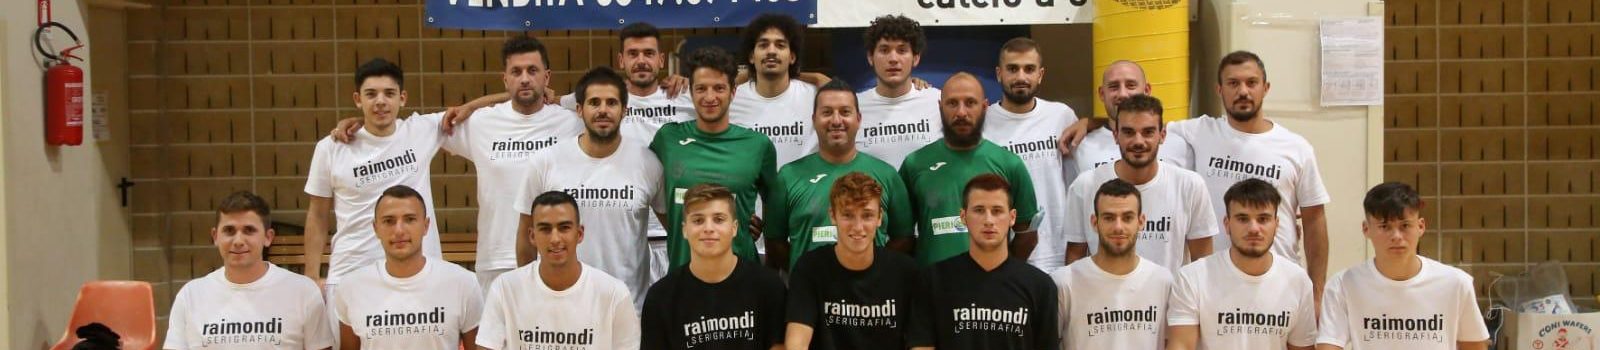 UFFICIALE: Vespignani non è più l’allenatore della Futsal Cesena